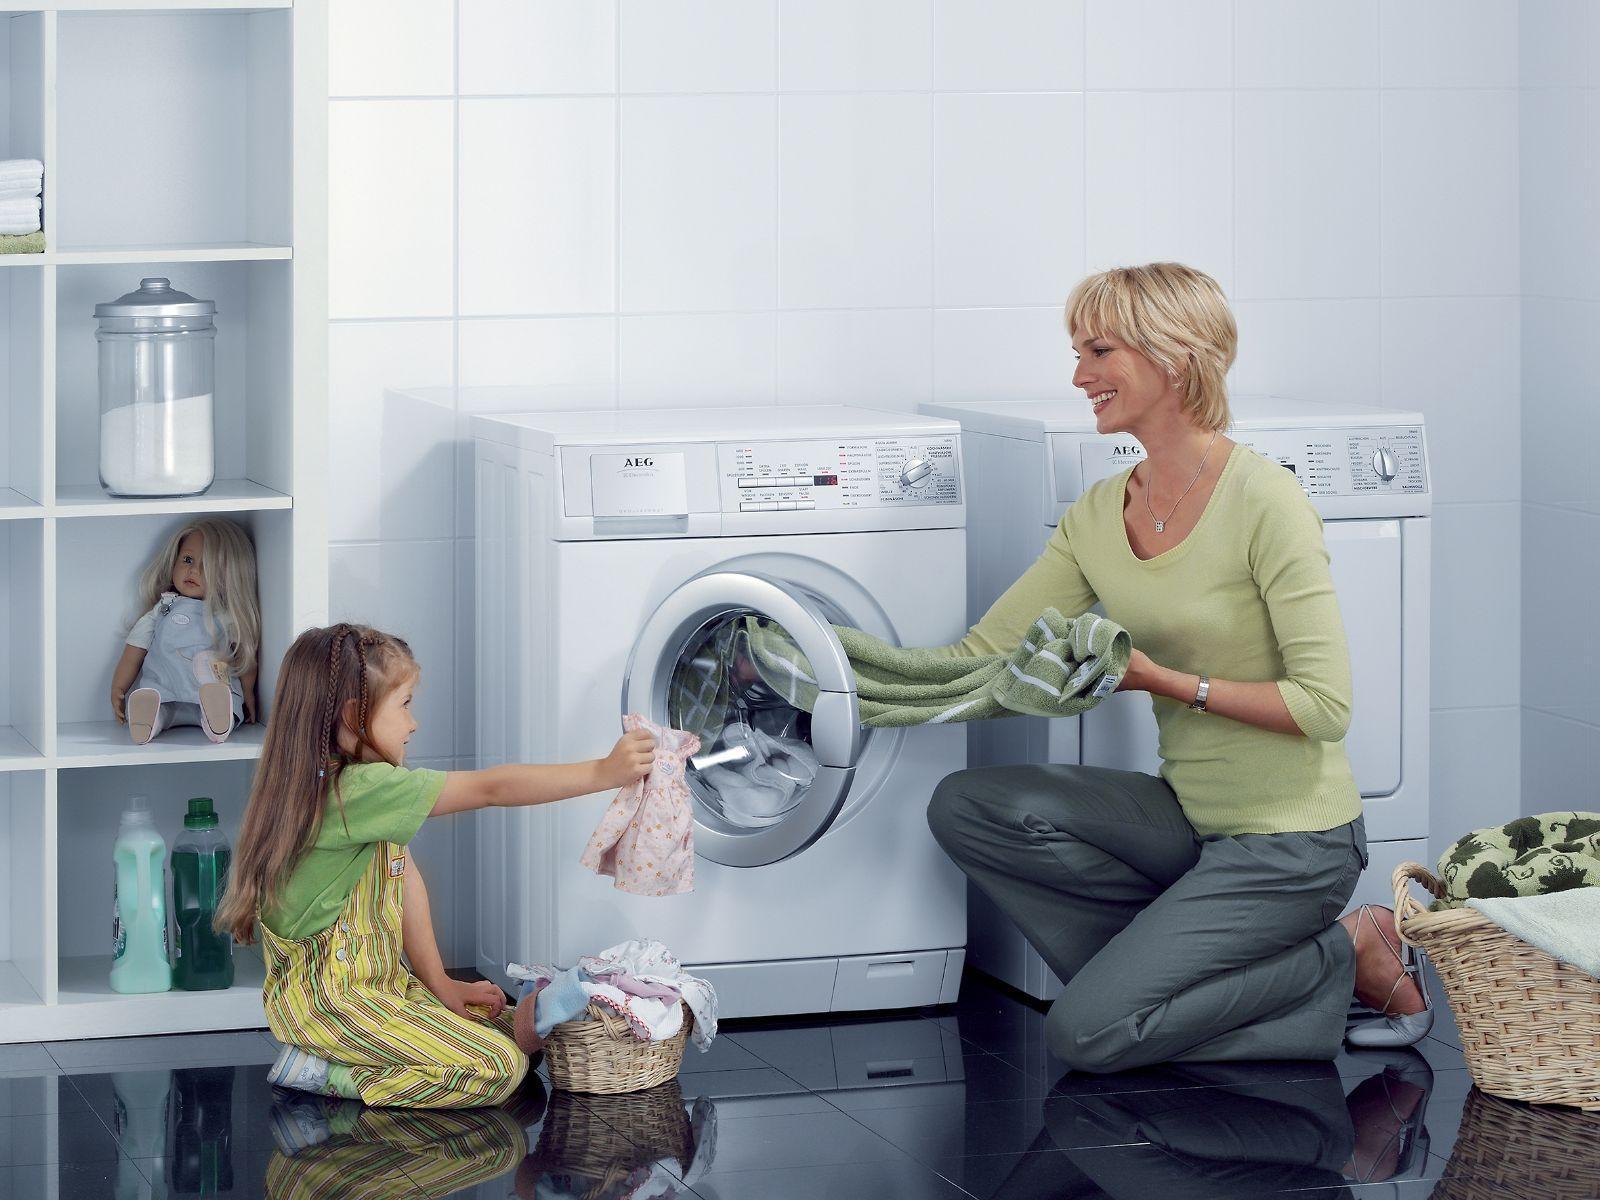 Khi đang trong chương trình giặt ngâm rất đơn giản, bạn chỉ cần chờ xong chương trình hoặc nhấn nút xả ngay trên máy để xả nước